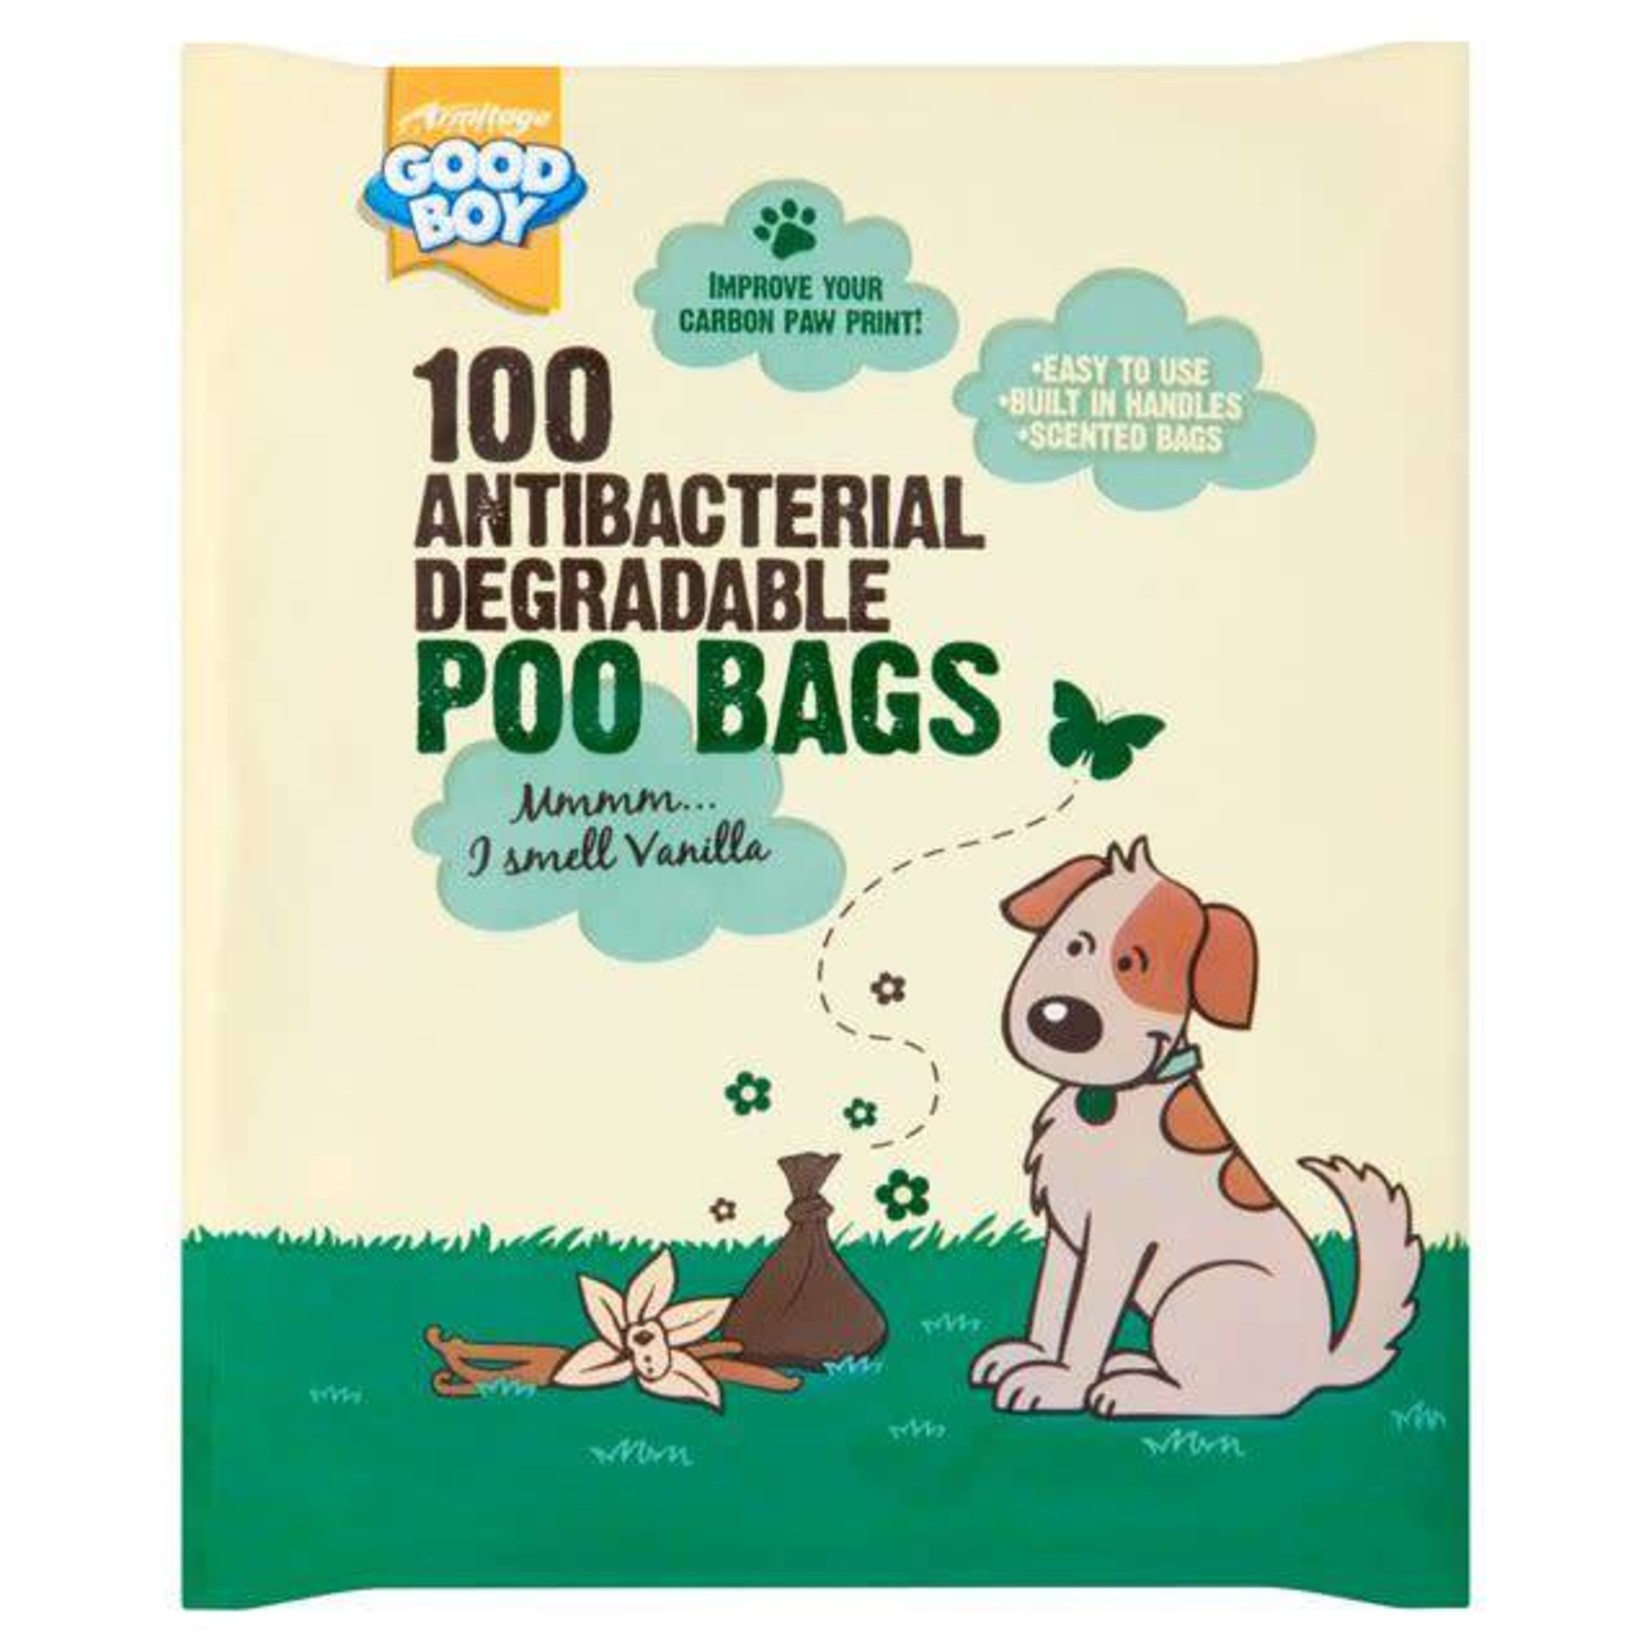 Good Boy Antibacterial Biodegradable Poo Bags, 100 pack